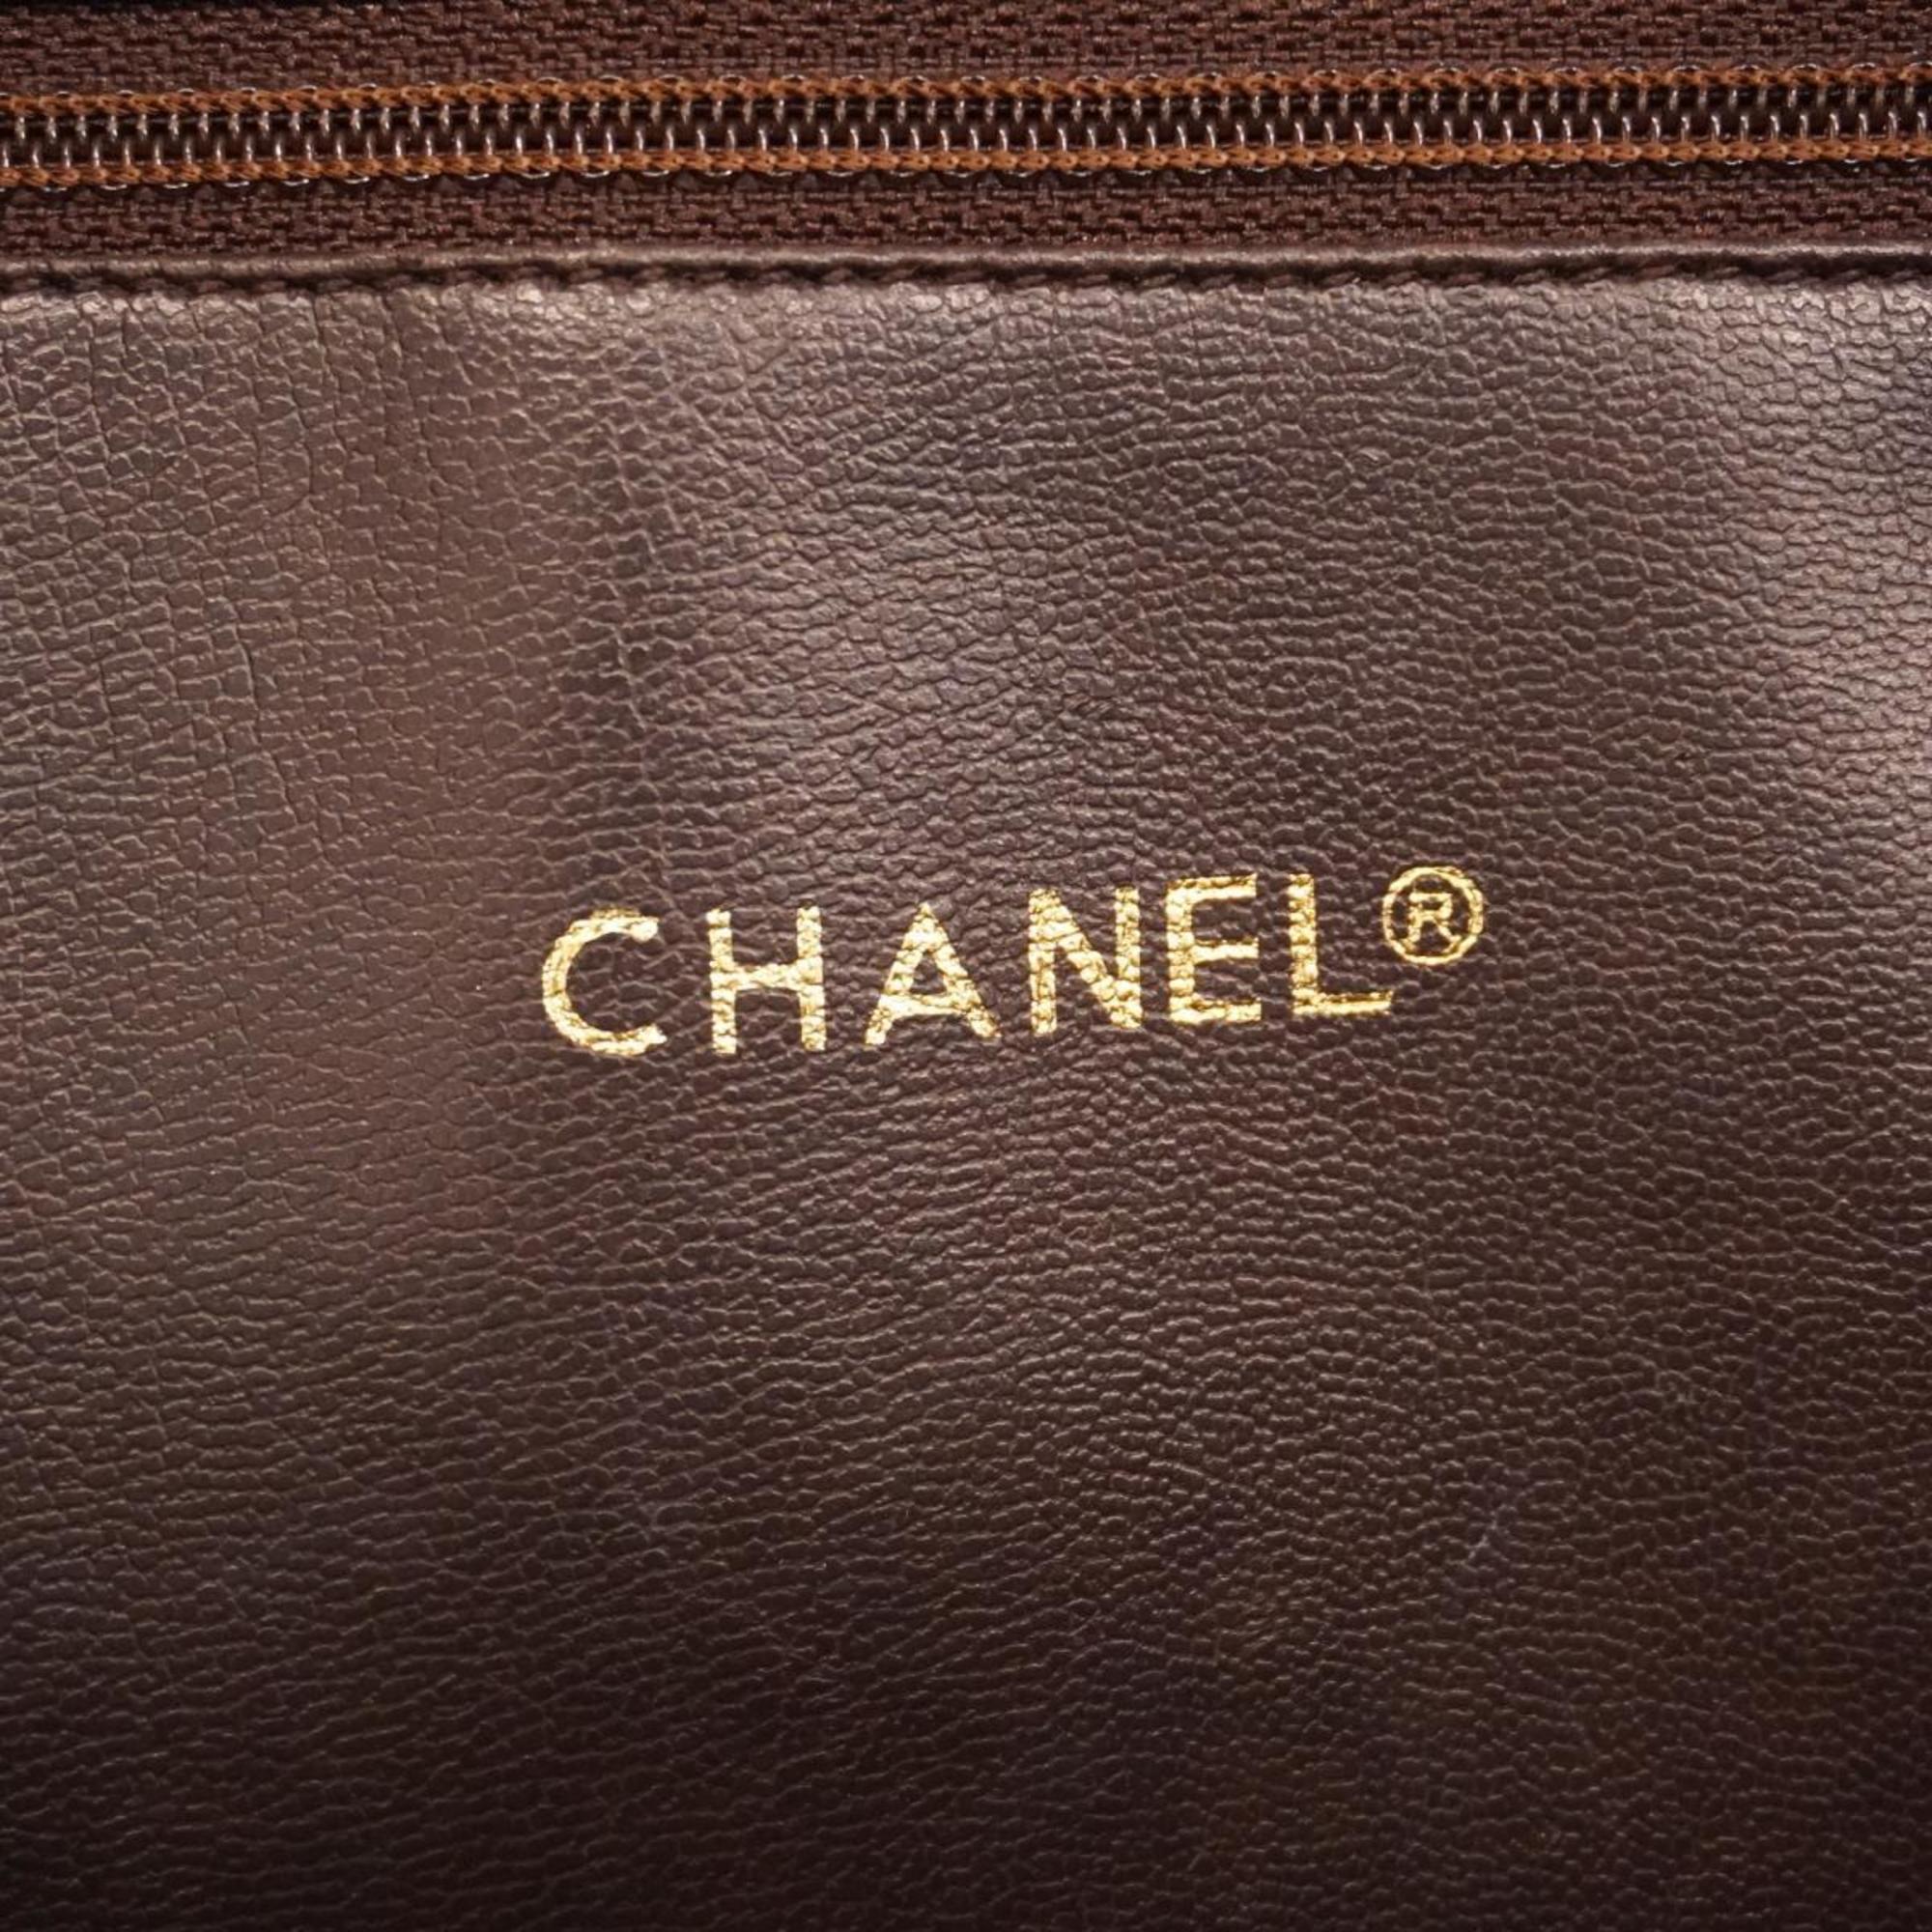 シャネル(Chanel) シャネル ショルダーバッグ マトラッセ チェーンショルダー ラムスキン ブラウン   レディース